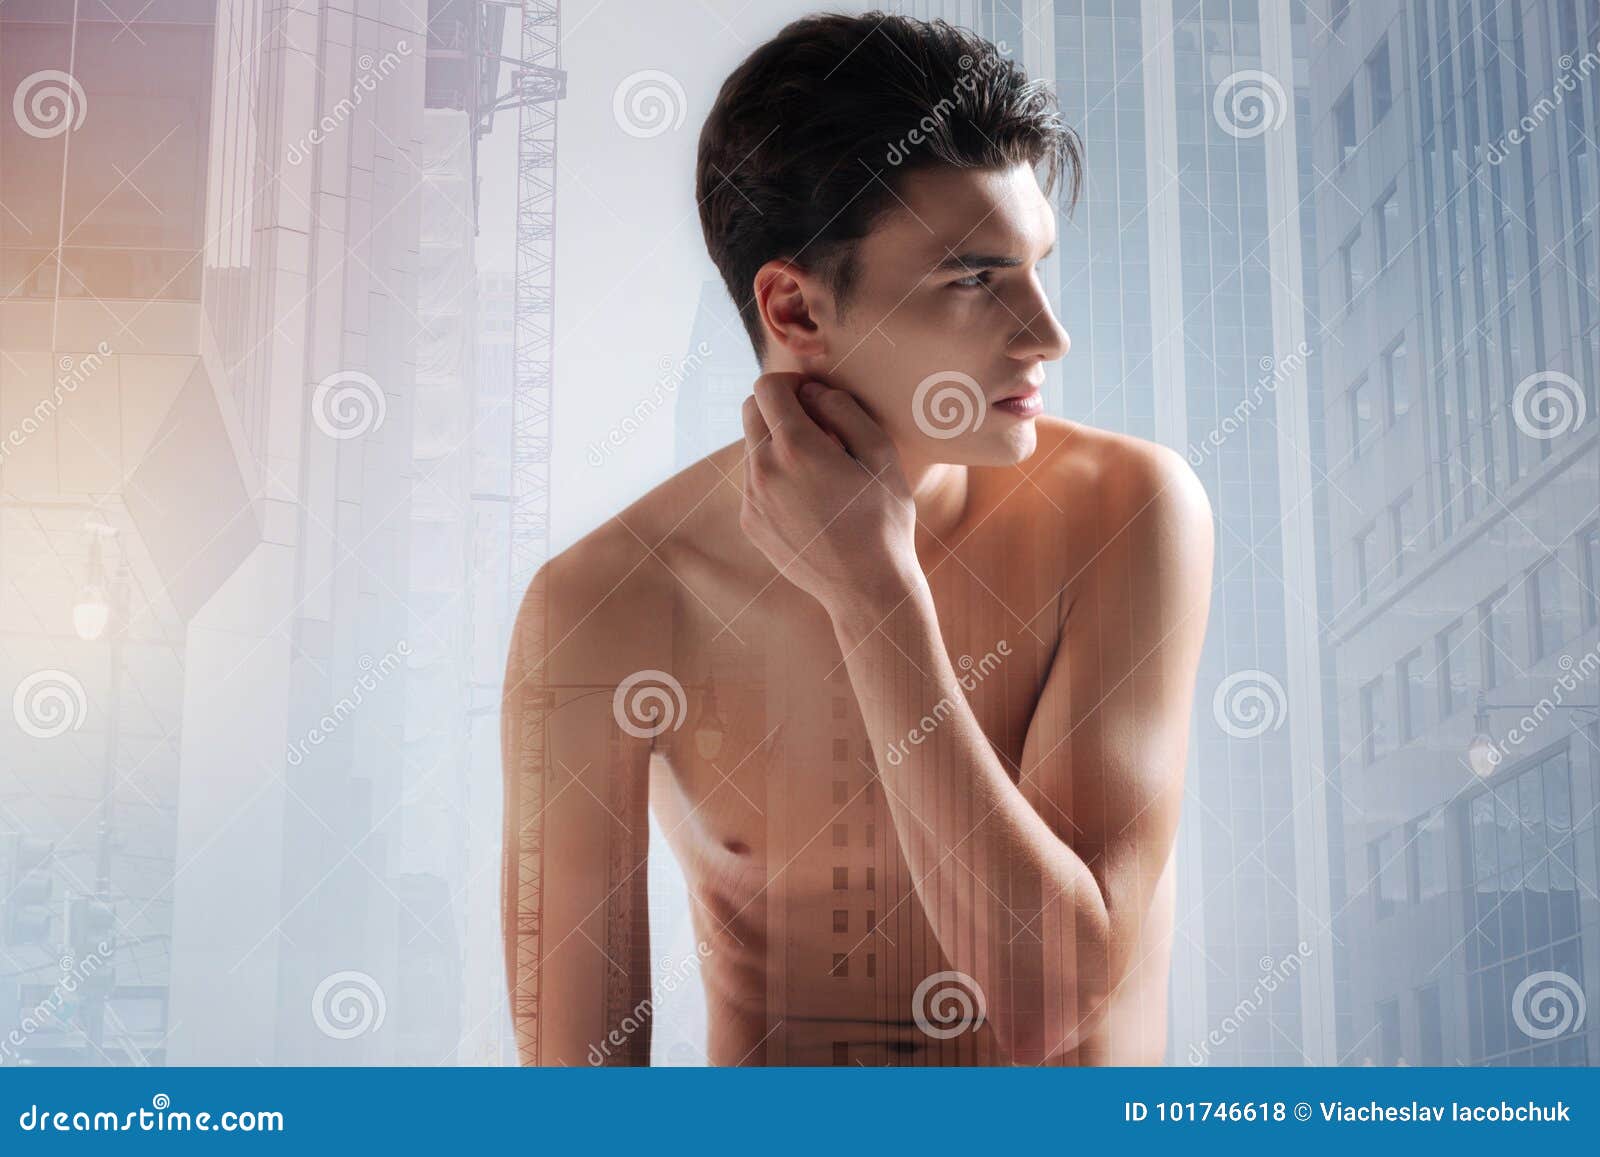 Έφηβος γυμνό φωτογραφίες com